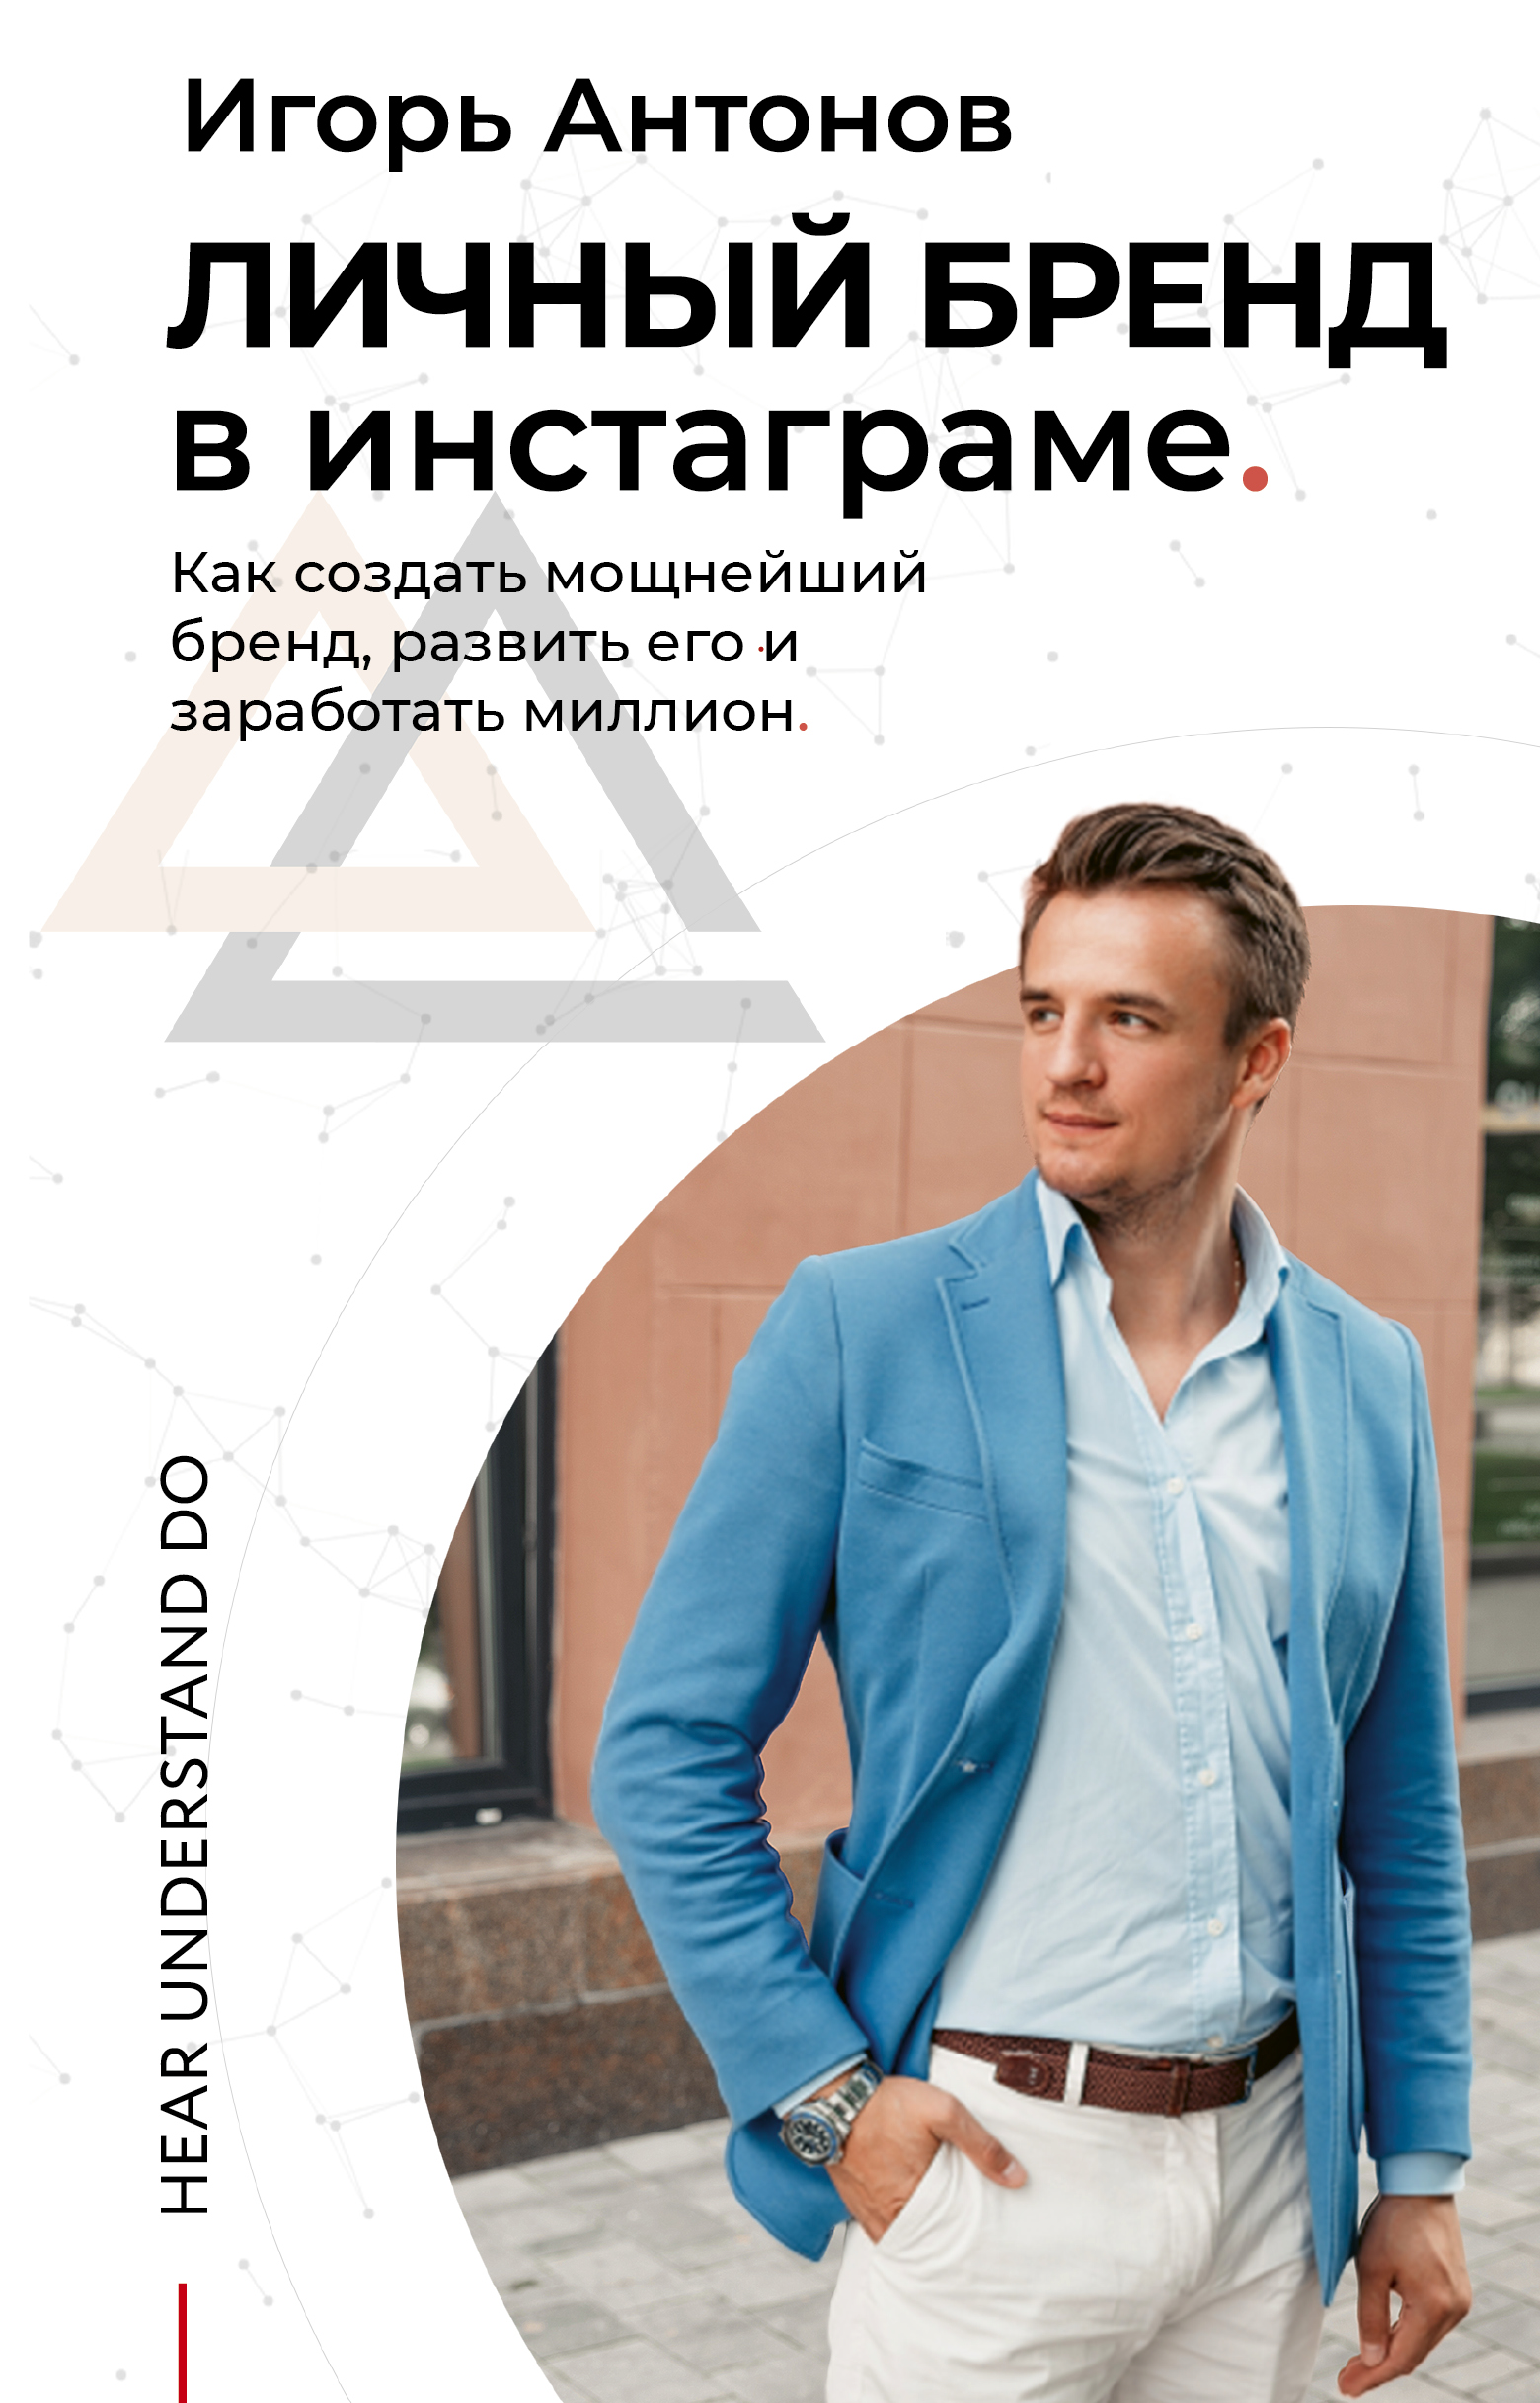 Антонов Игорь Михайлович - Личный бренд в Инстаграме. Как создать мощнейший бренд, развить его и заработать миллион